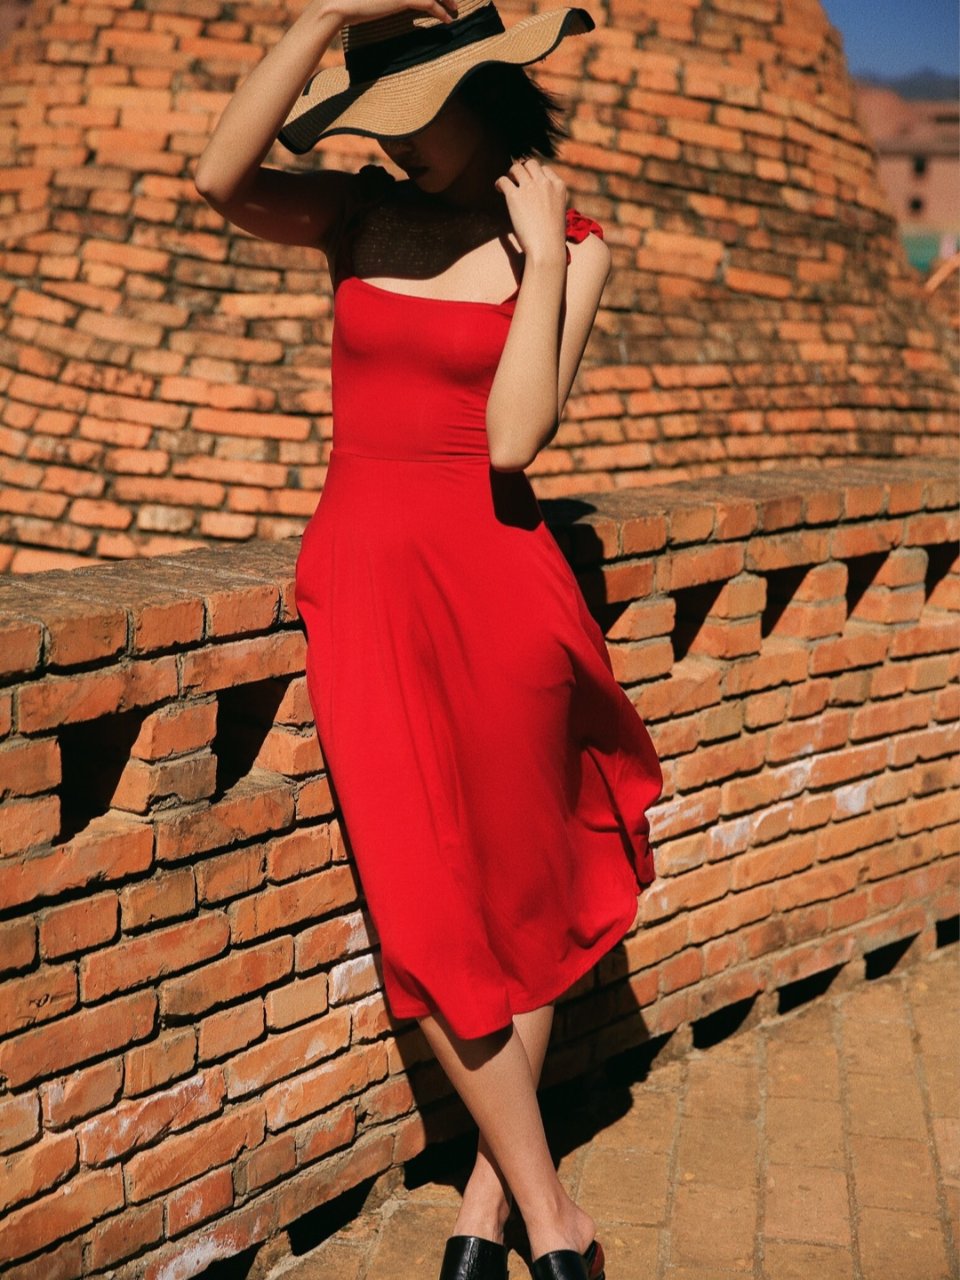 情人节的红裙子 | 昆明周边拍照圣地...